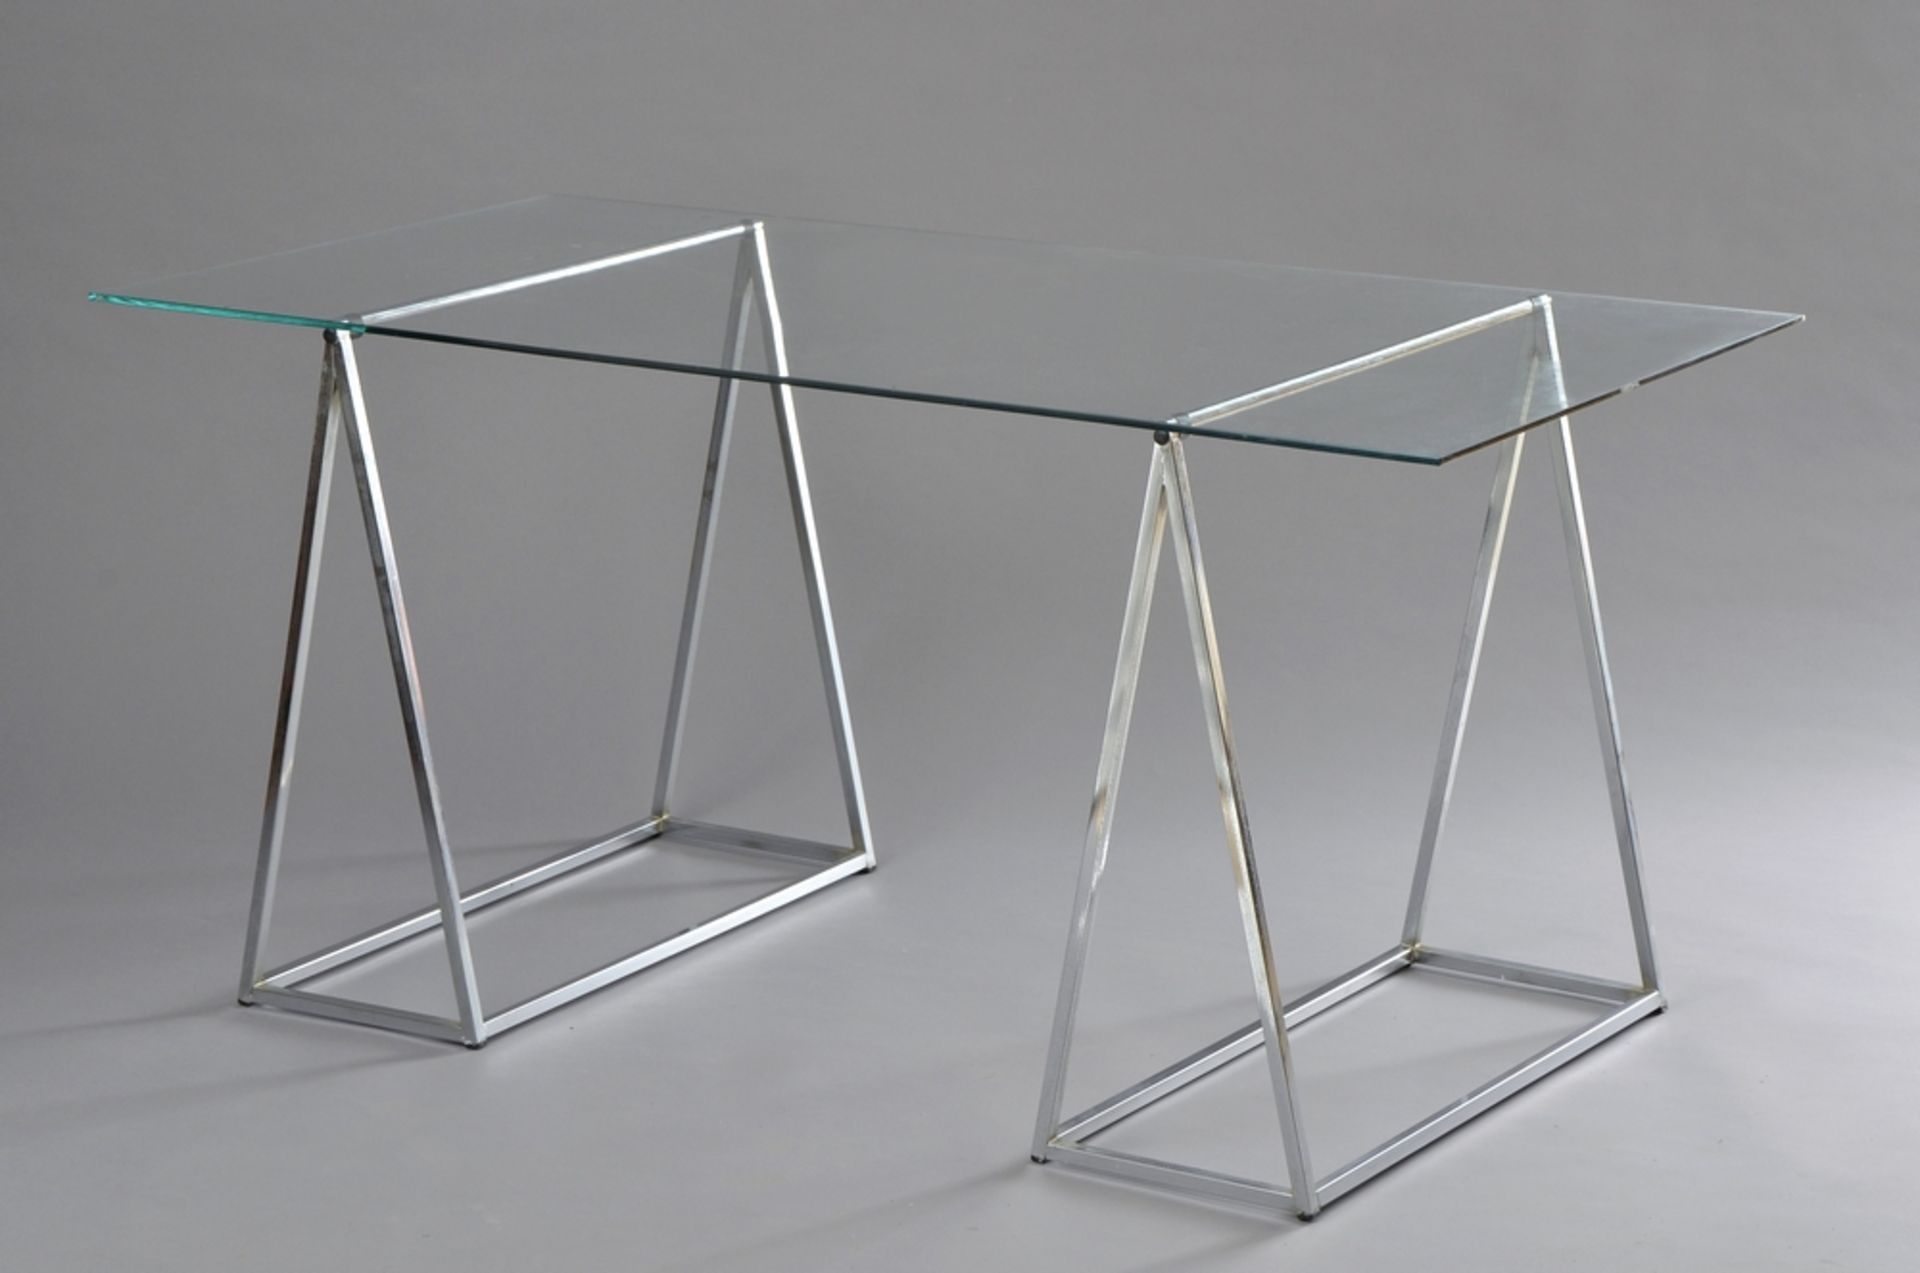 Moderner Schreibtisch mit zwei verchromten Böcken und Glasplatte, 72x150x70cm, Flugrost